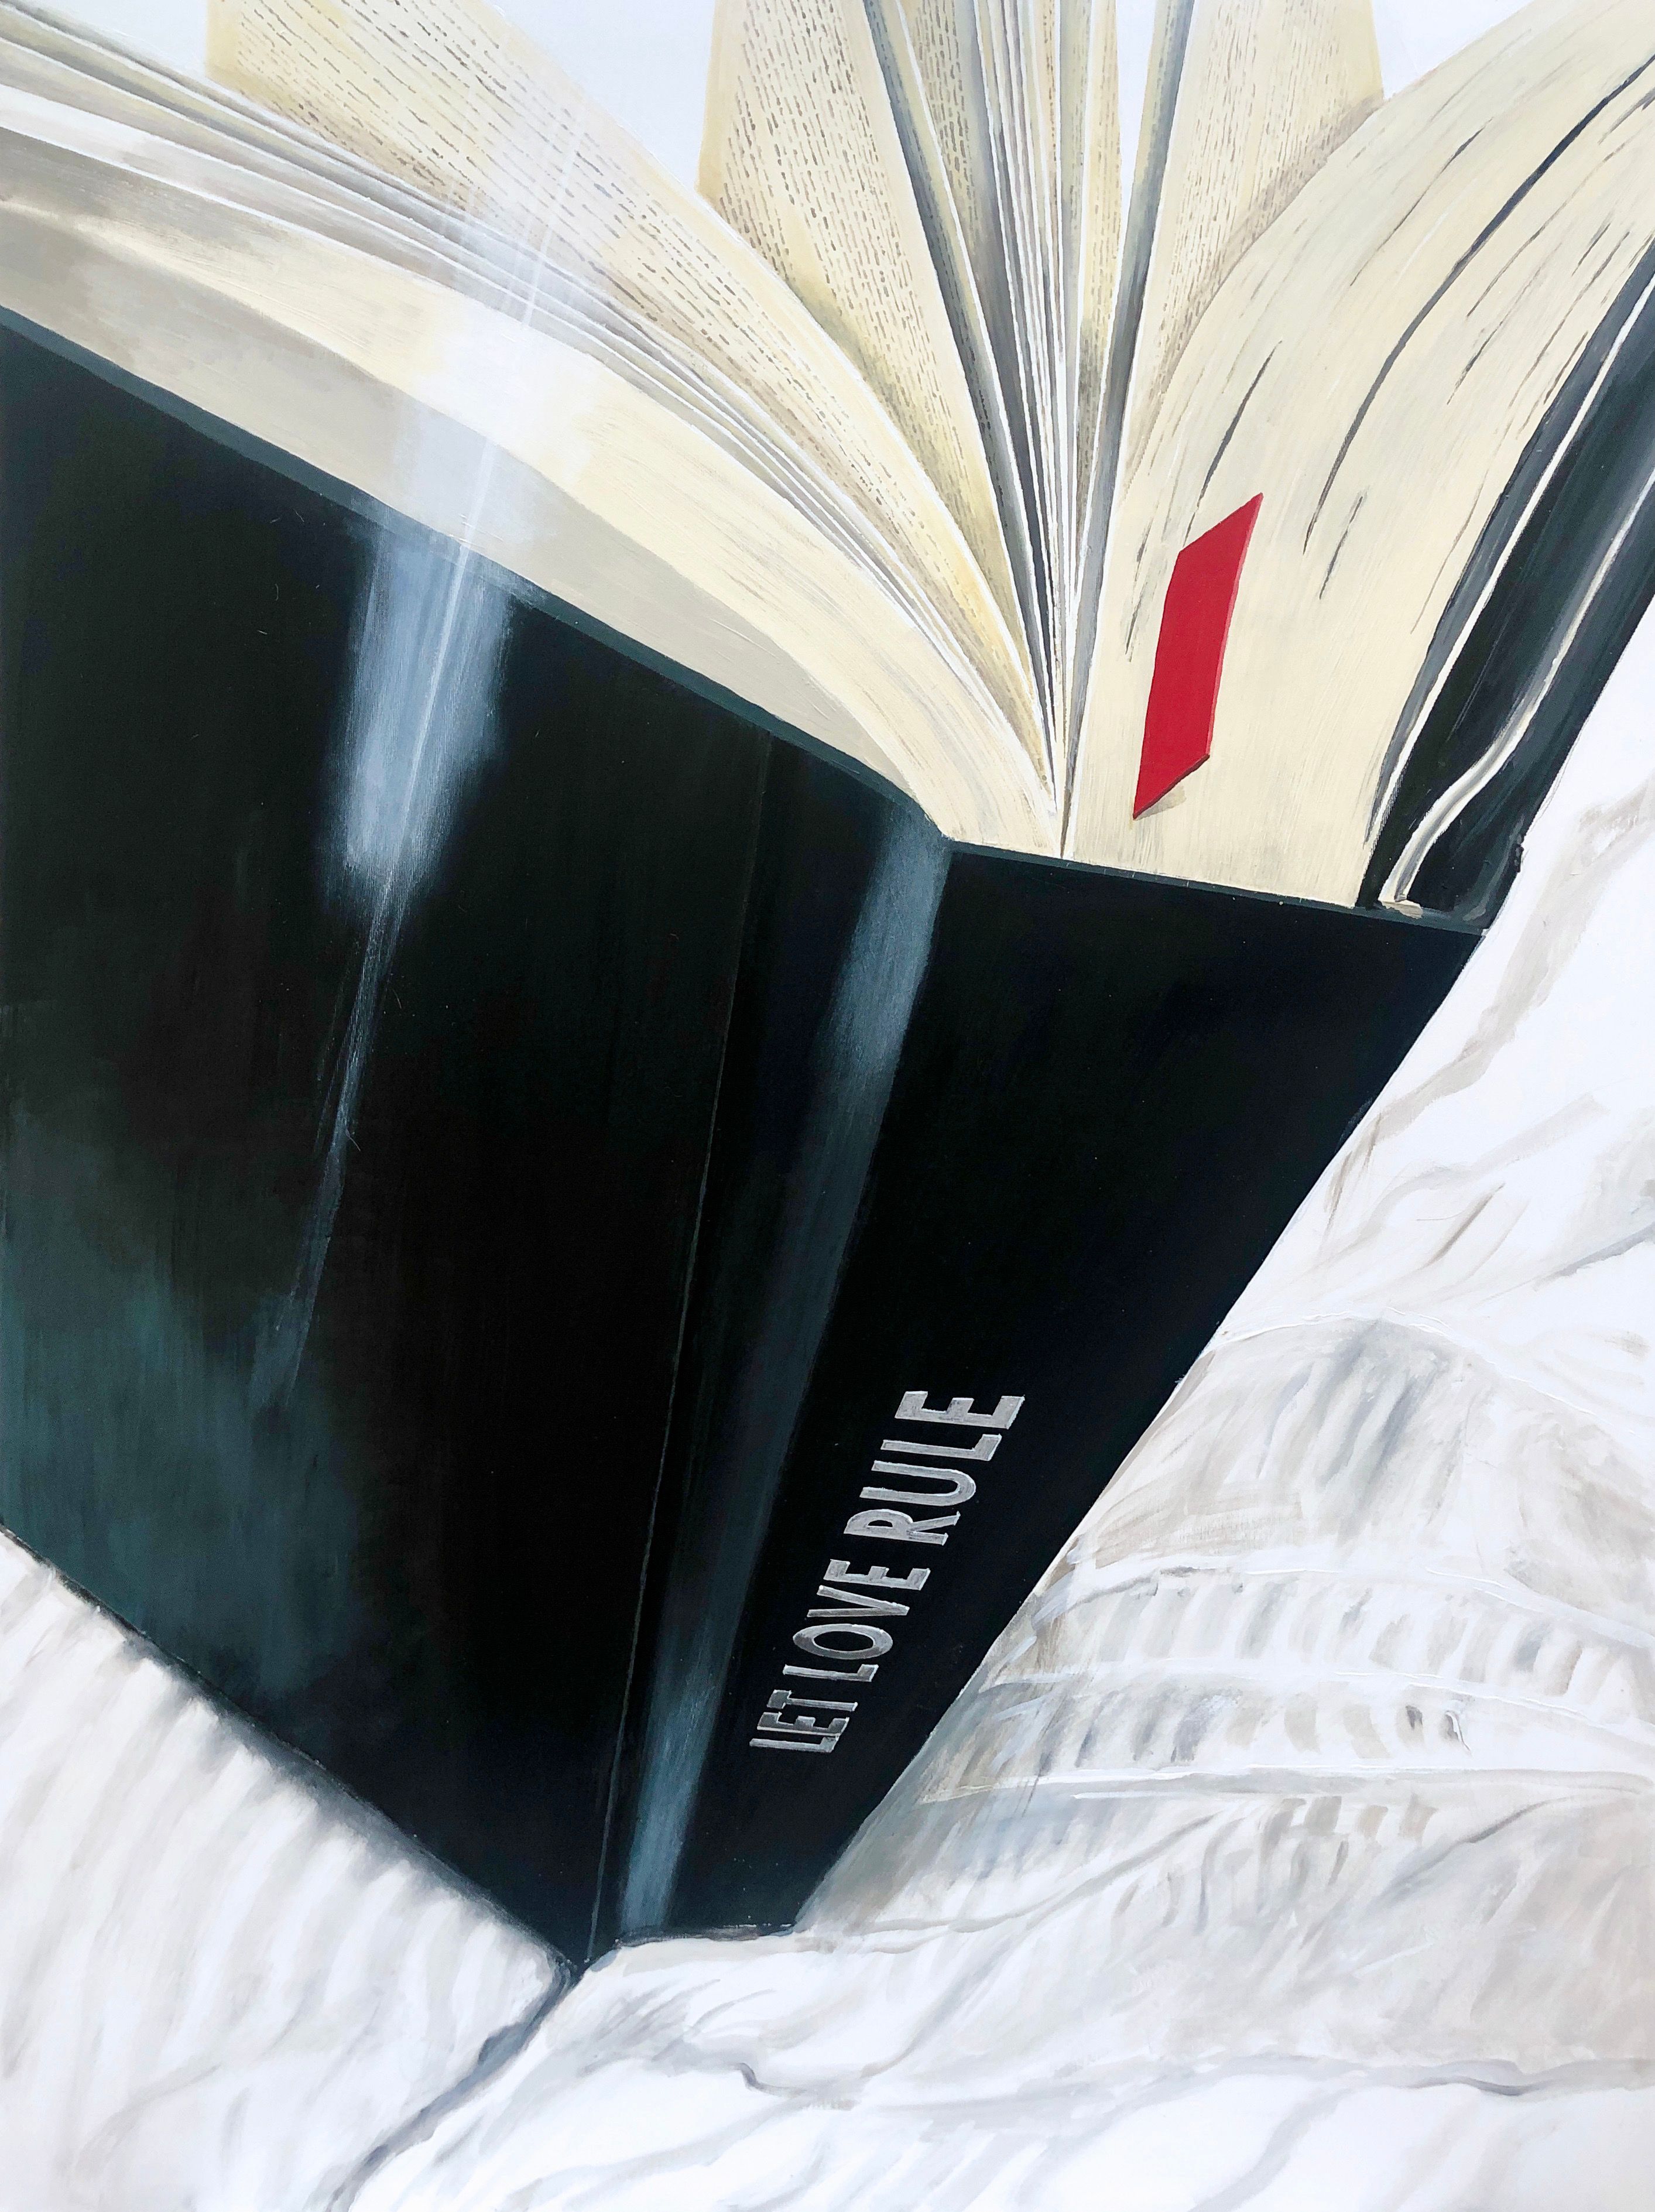 Rolf Gnauck "Lenny" Detallada pintura en color de gran formato de un libro abierto